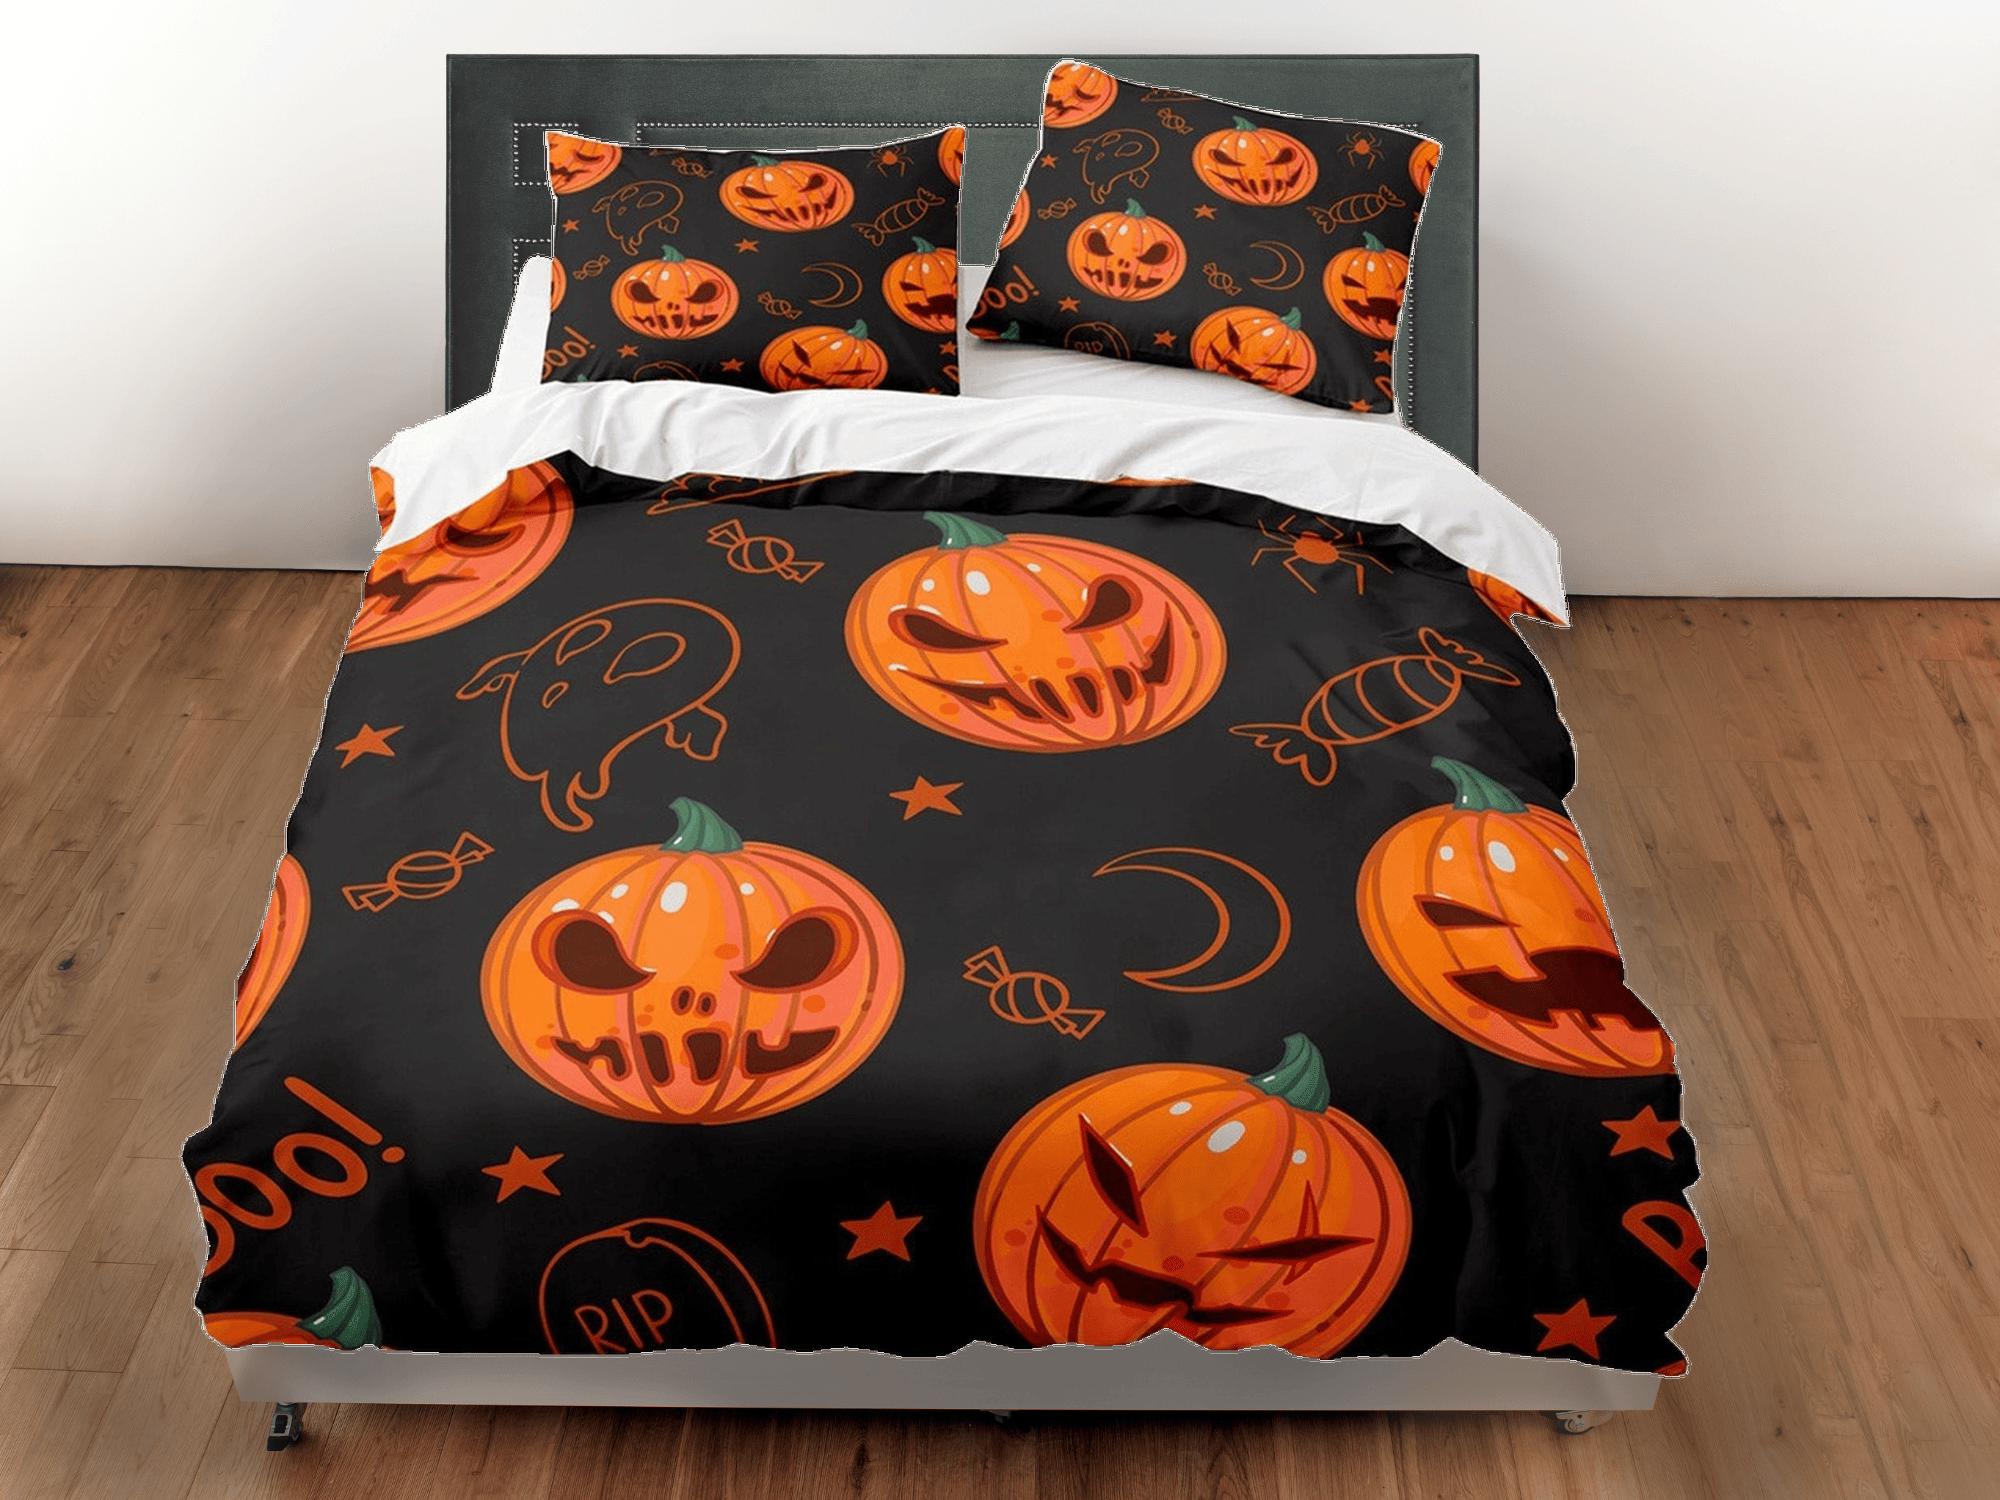 daintyduvet Spooky pumpkins halloween full size bedding & pillowcase, black duvet cover set dorm bedding, nursery toddler bedding, halloween gift